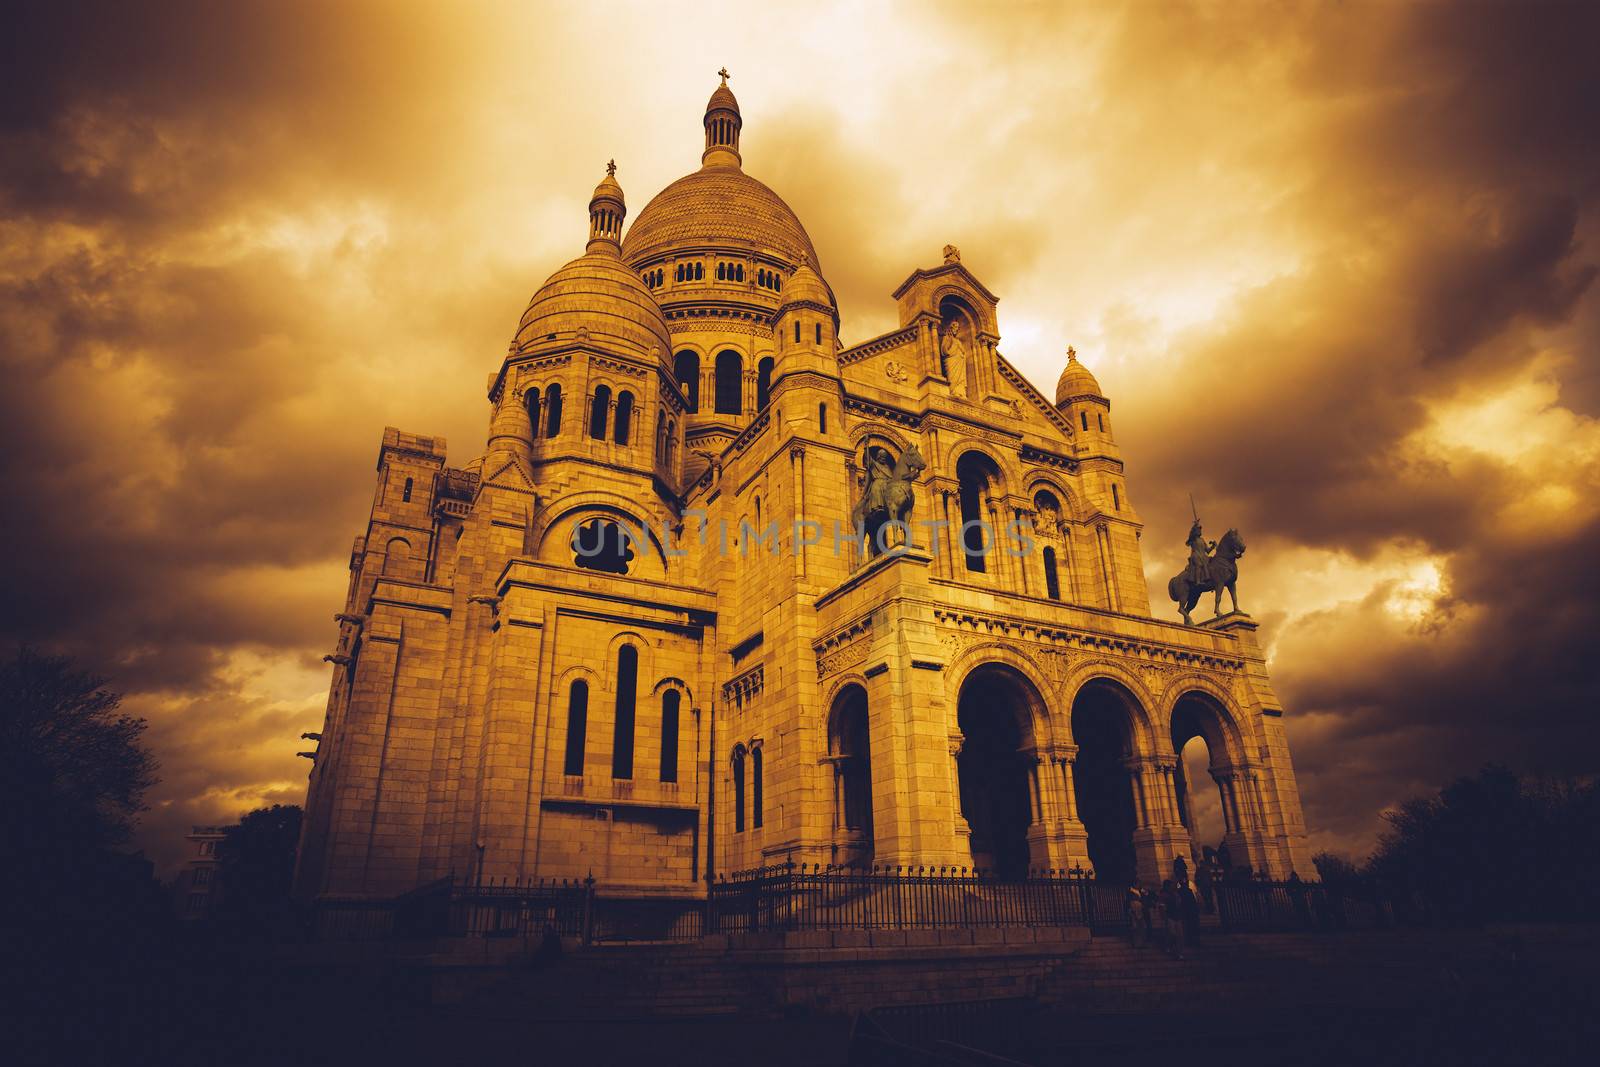 Sacre Coeur in Paris by sumners